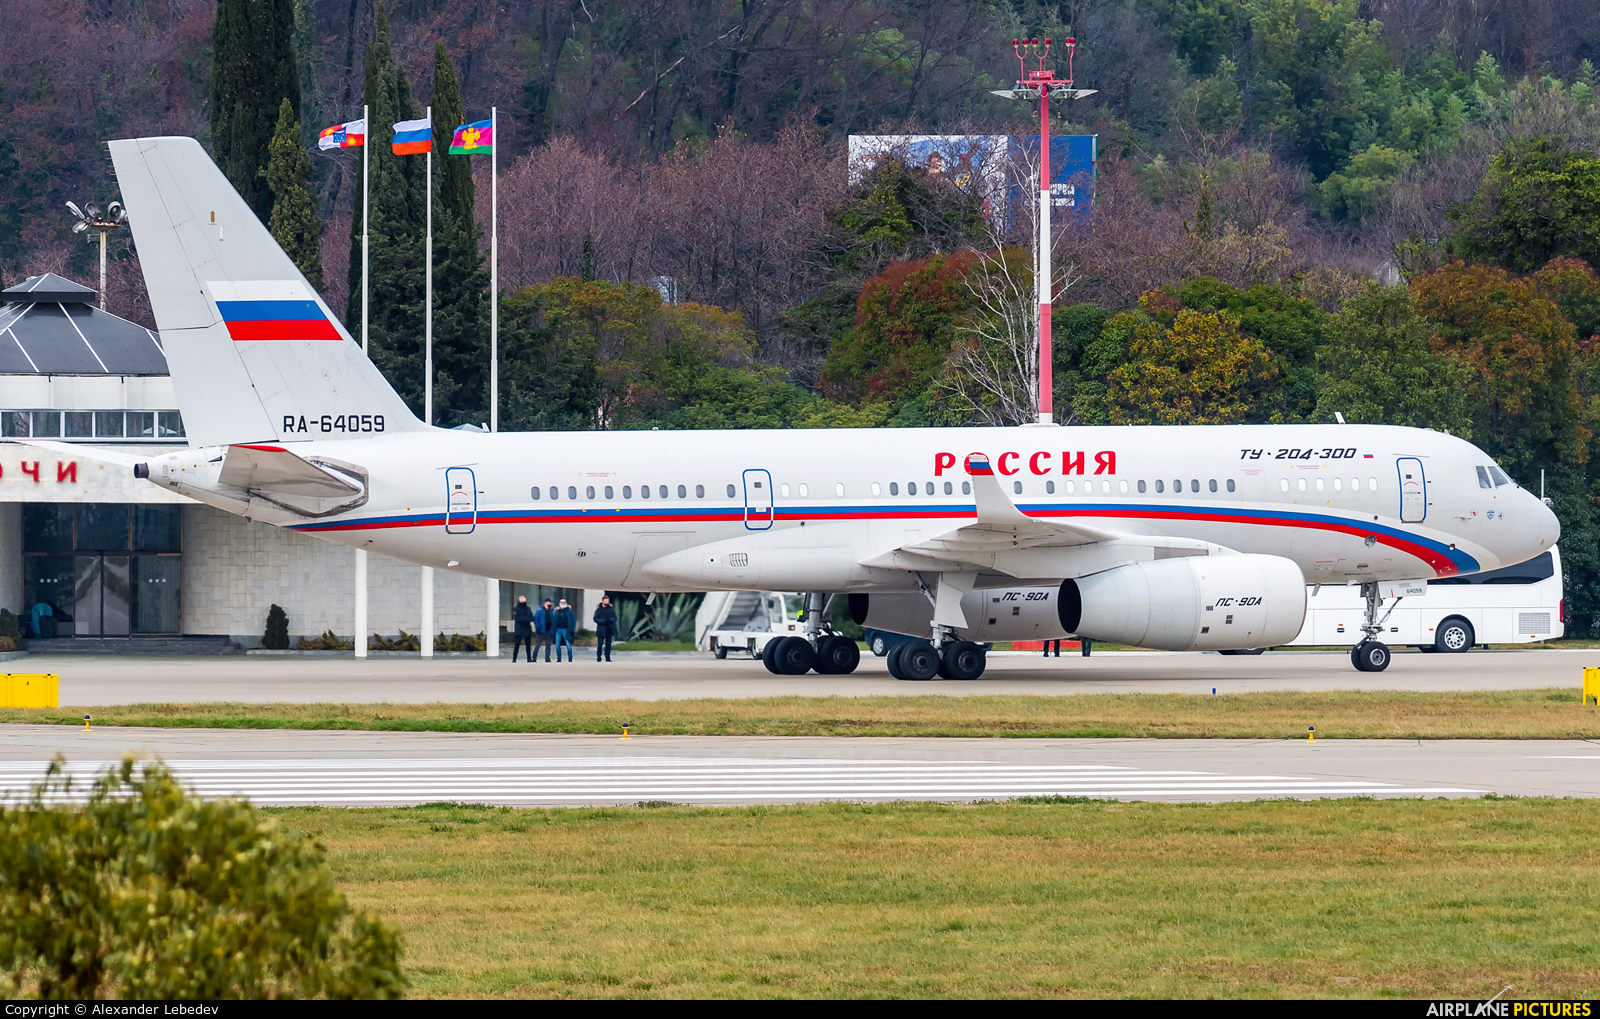 Rossiya Special Flight Detachment RA-64059 aircraft at Sochi Intl